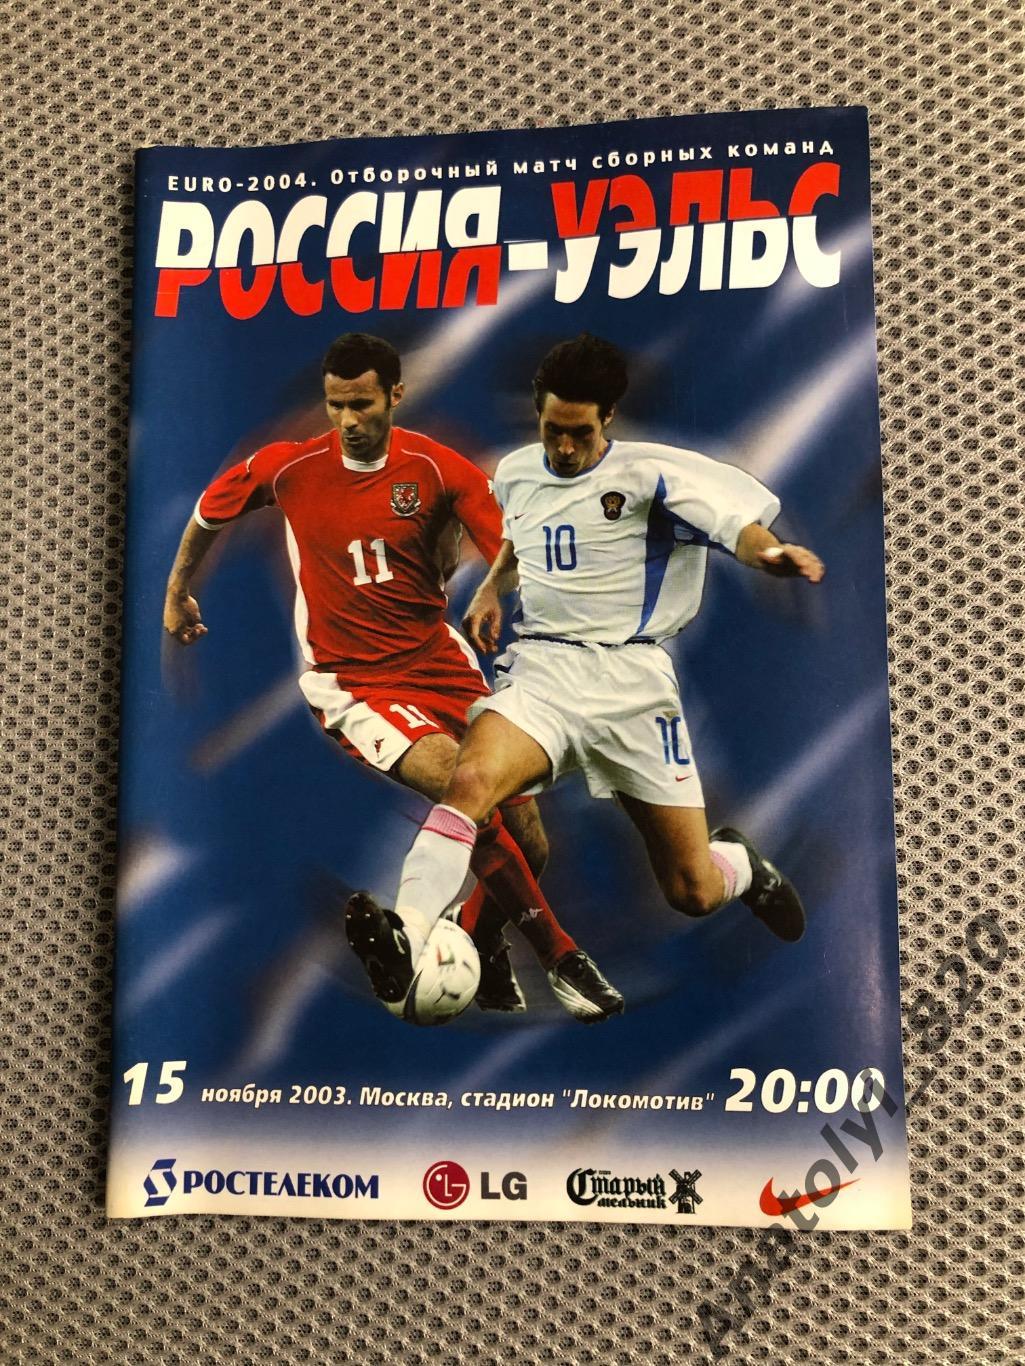 Сборная России - сборная Уэльса, 15.11.2003